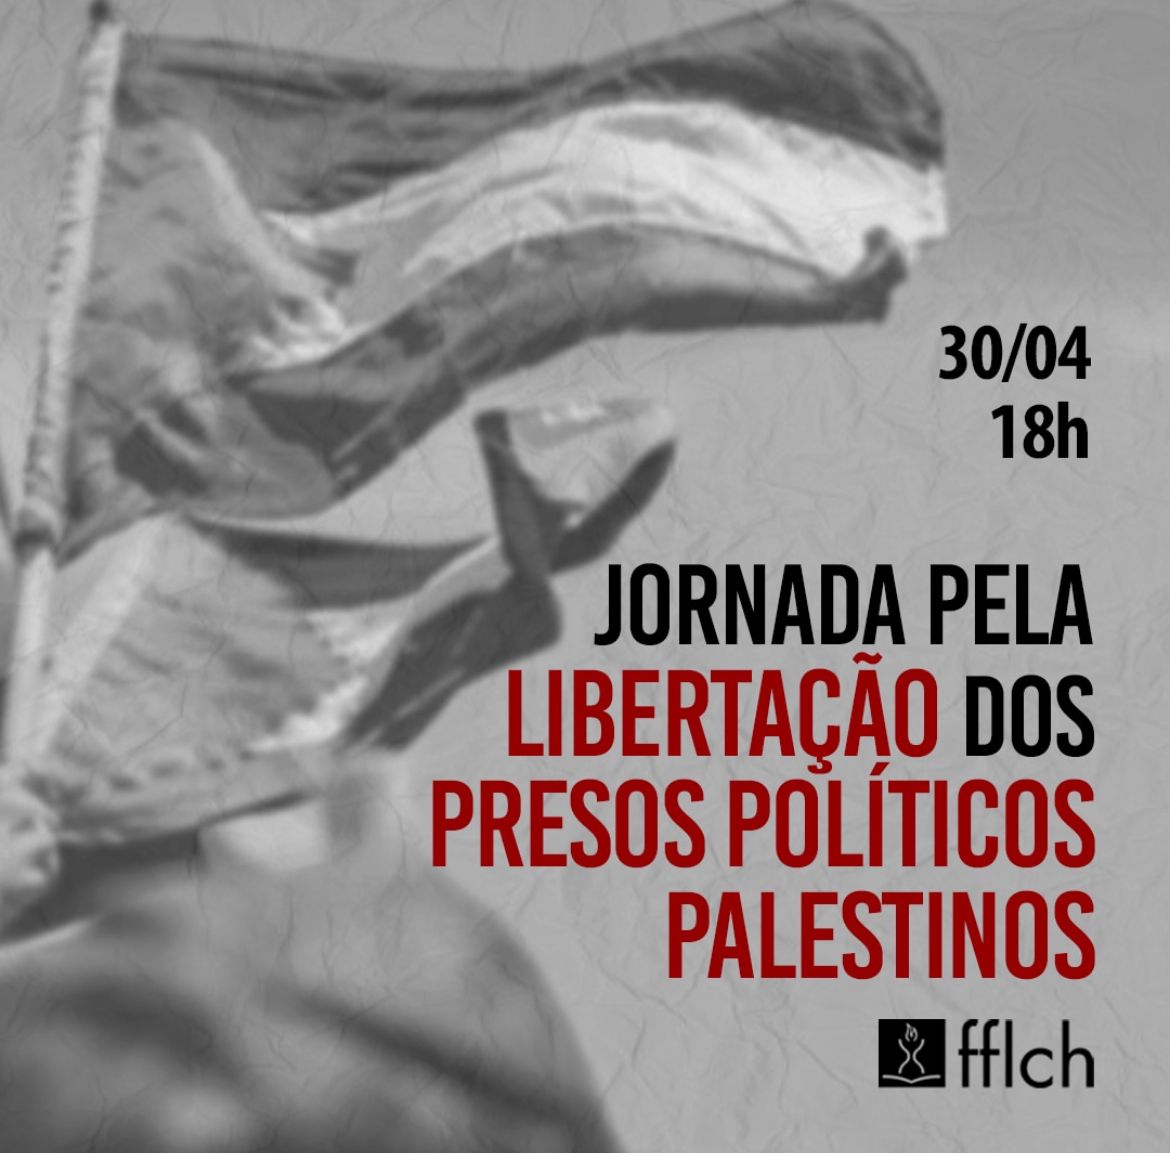 Entidades pró-Palestina promovem Jornada pela Libertação dos Presos Políticos Palestinos em São Paulo, nesta terça